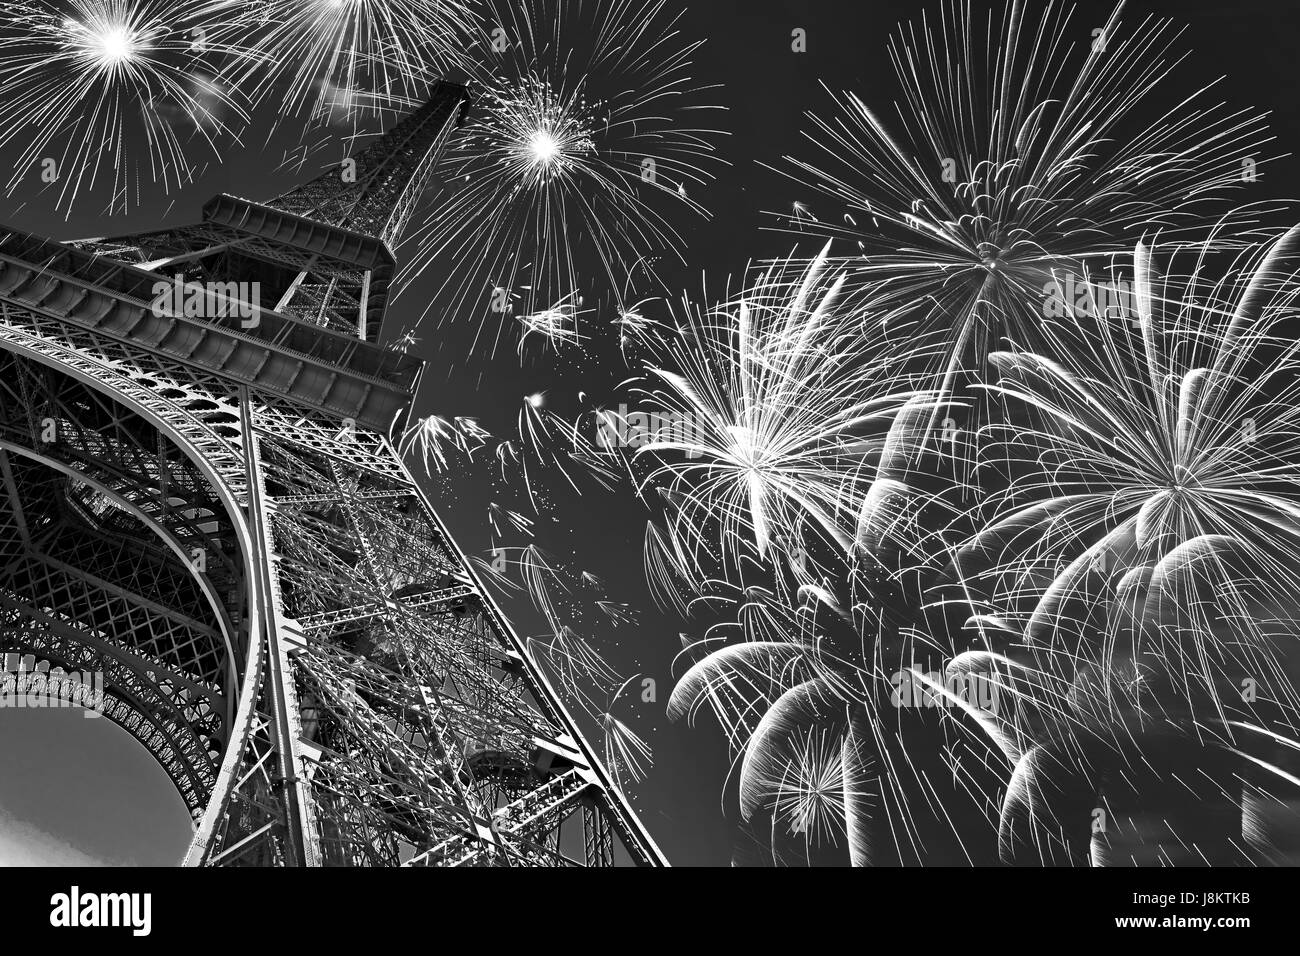 Tour Eiffel la nuit avec des feux d'artifice, fête et partie, image en noir et blanc, Paris France Banque D'Images